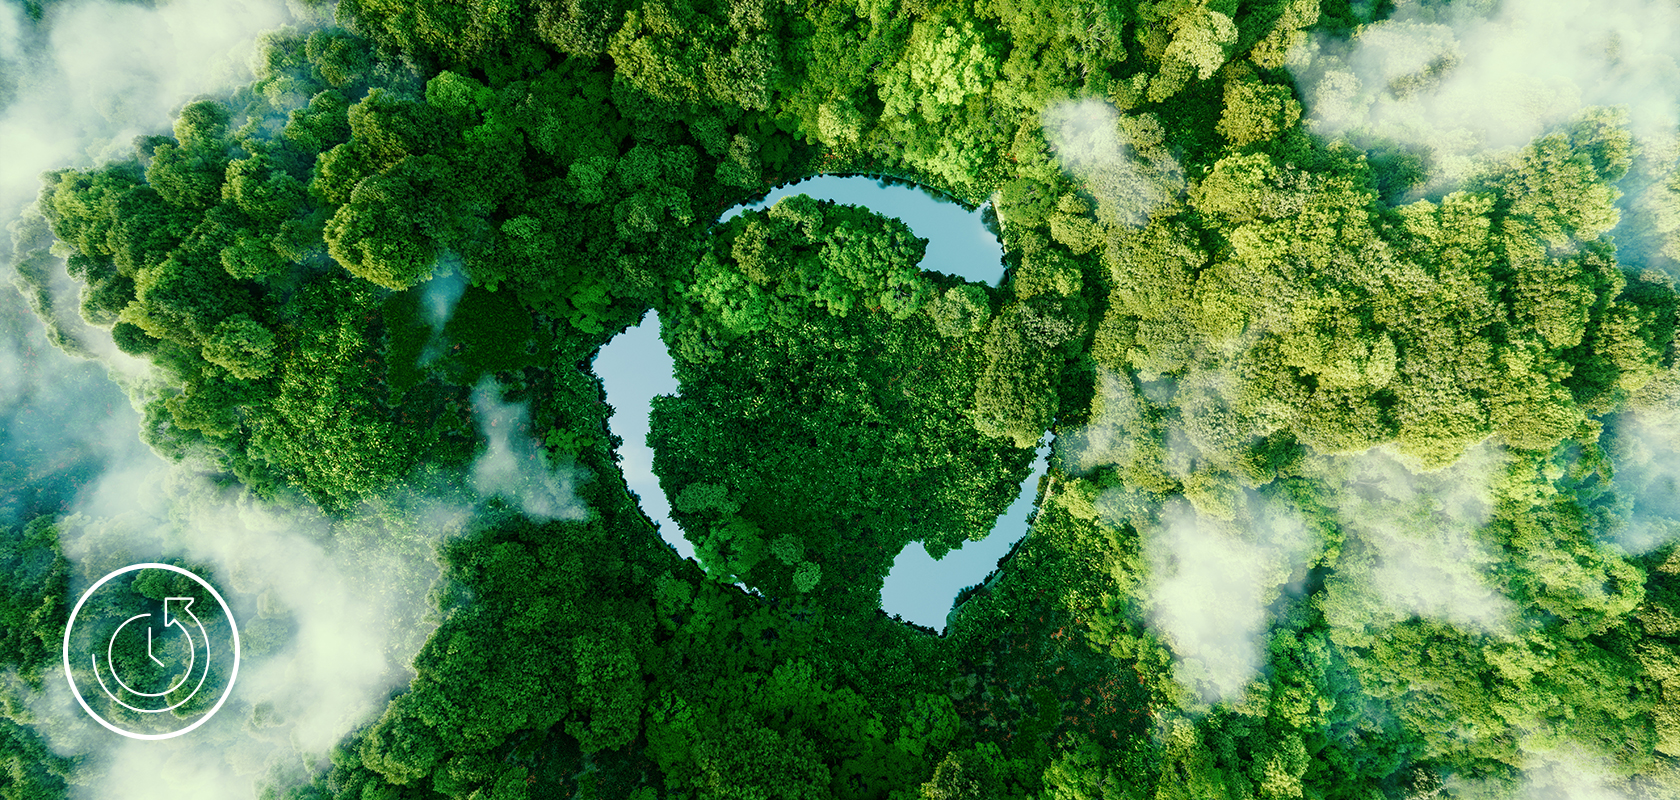 Una vista aerea di una foresta rigogliosa con un suggestivo spiazzo circolare, simboleggiante un'iniziativa eco-friendly o il potere della natura.